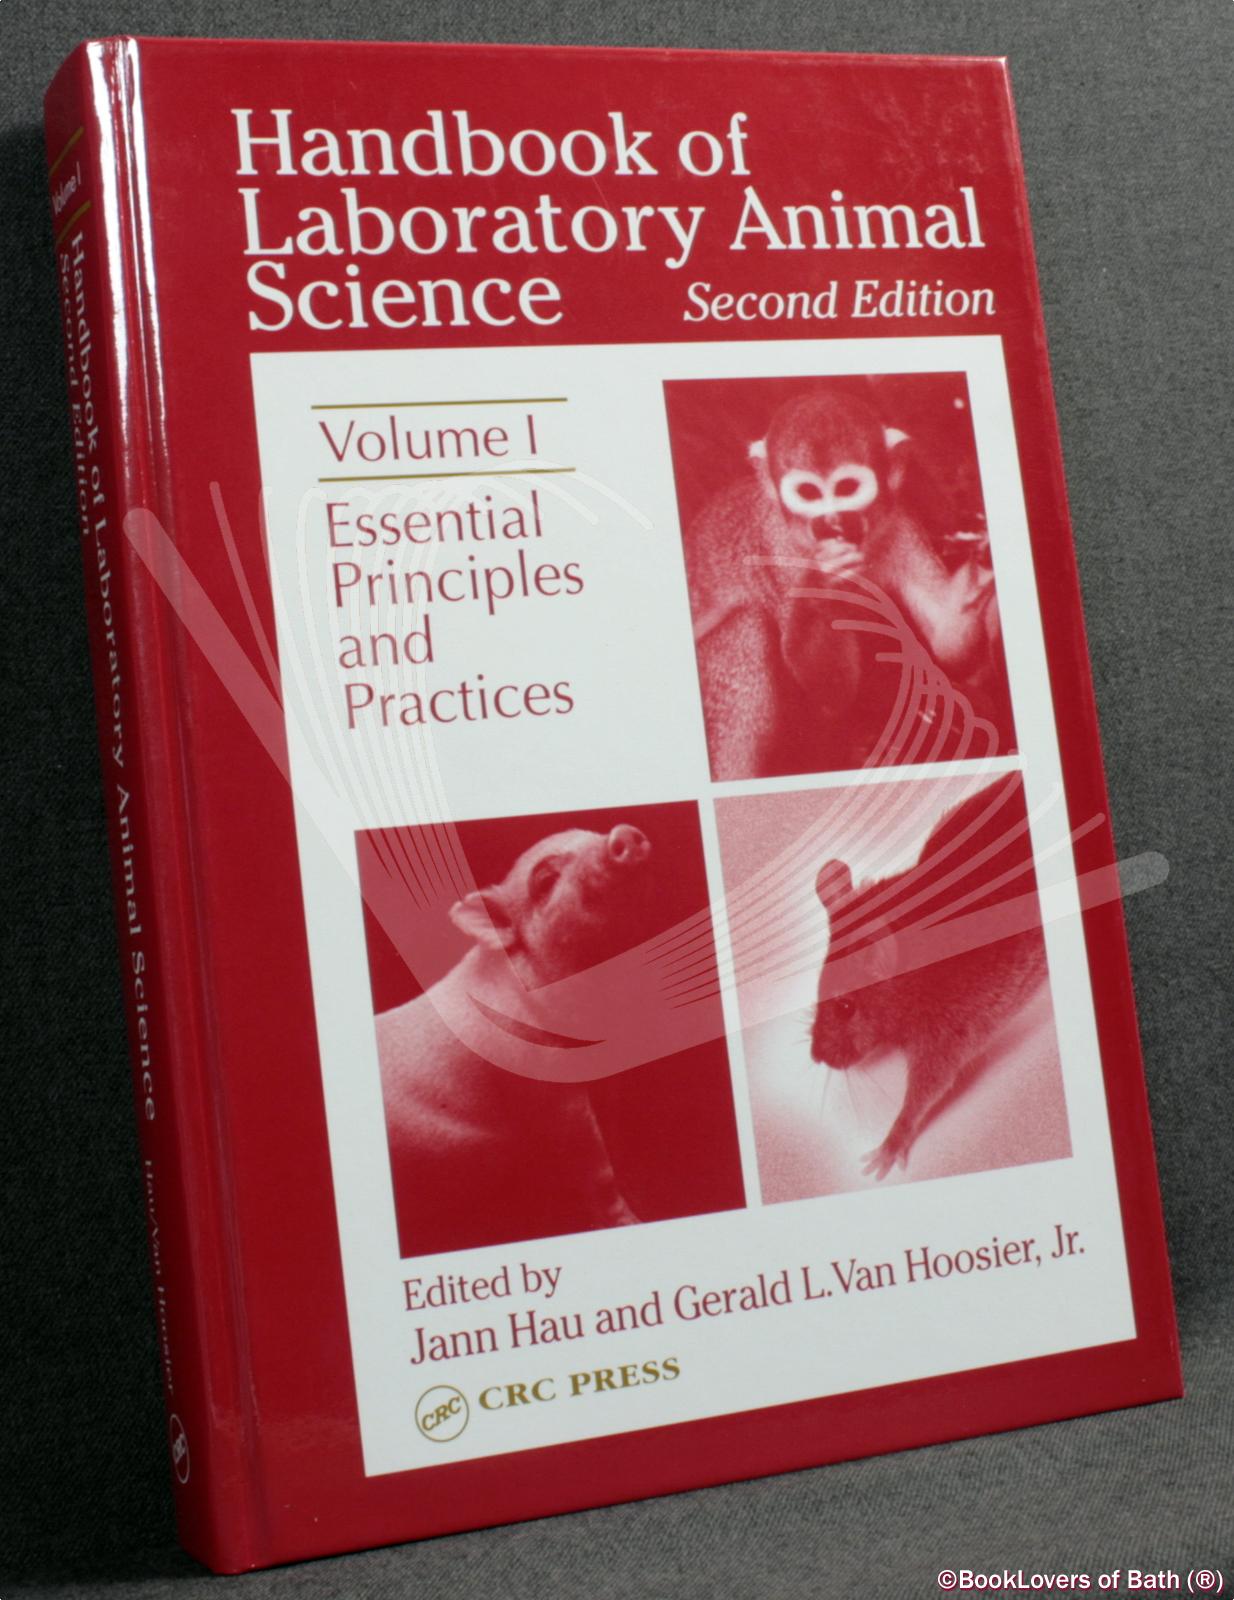 Handbook of Laboratory Animal Science Volume 1: Essential Principles and  Practices by Edited by Jann Hau & Gerald L. Van Hoosier, Jr.: Hardback (No  Dust Wrapper.) (2003) | BookLovers of Bath